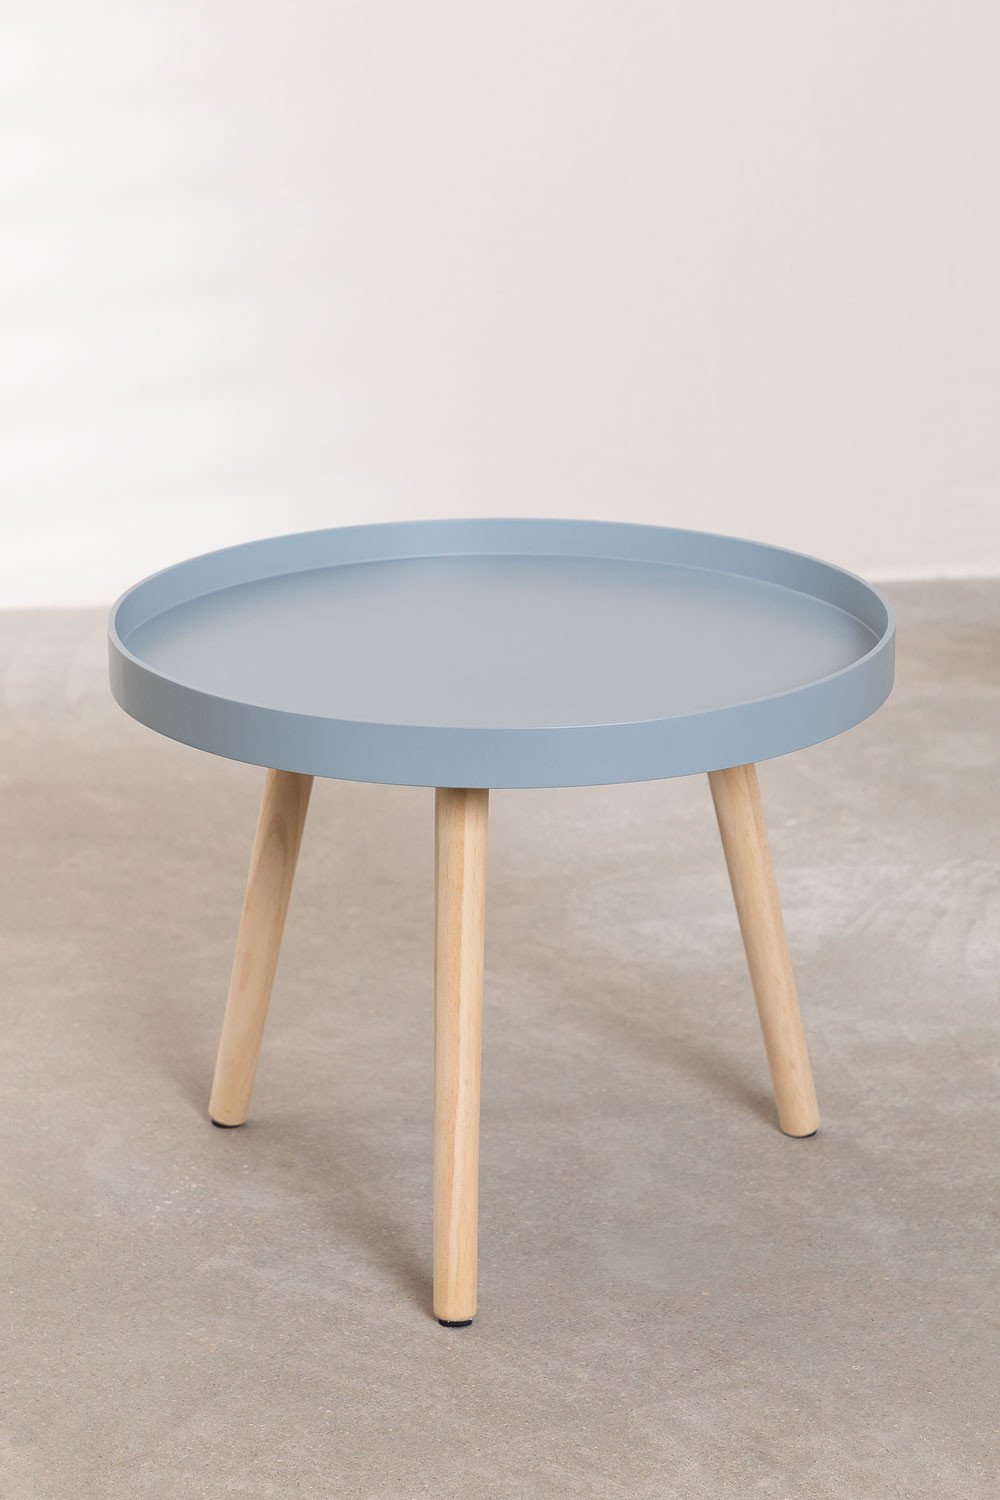 Table d'Appoint Ronde en Bois (Ø50 cm) Sigma, image de la galerie 2